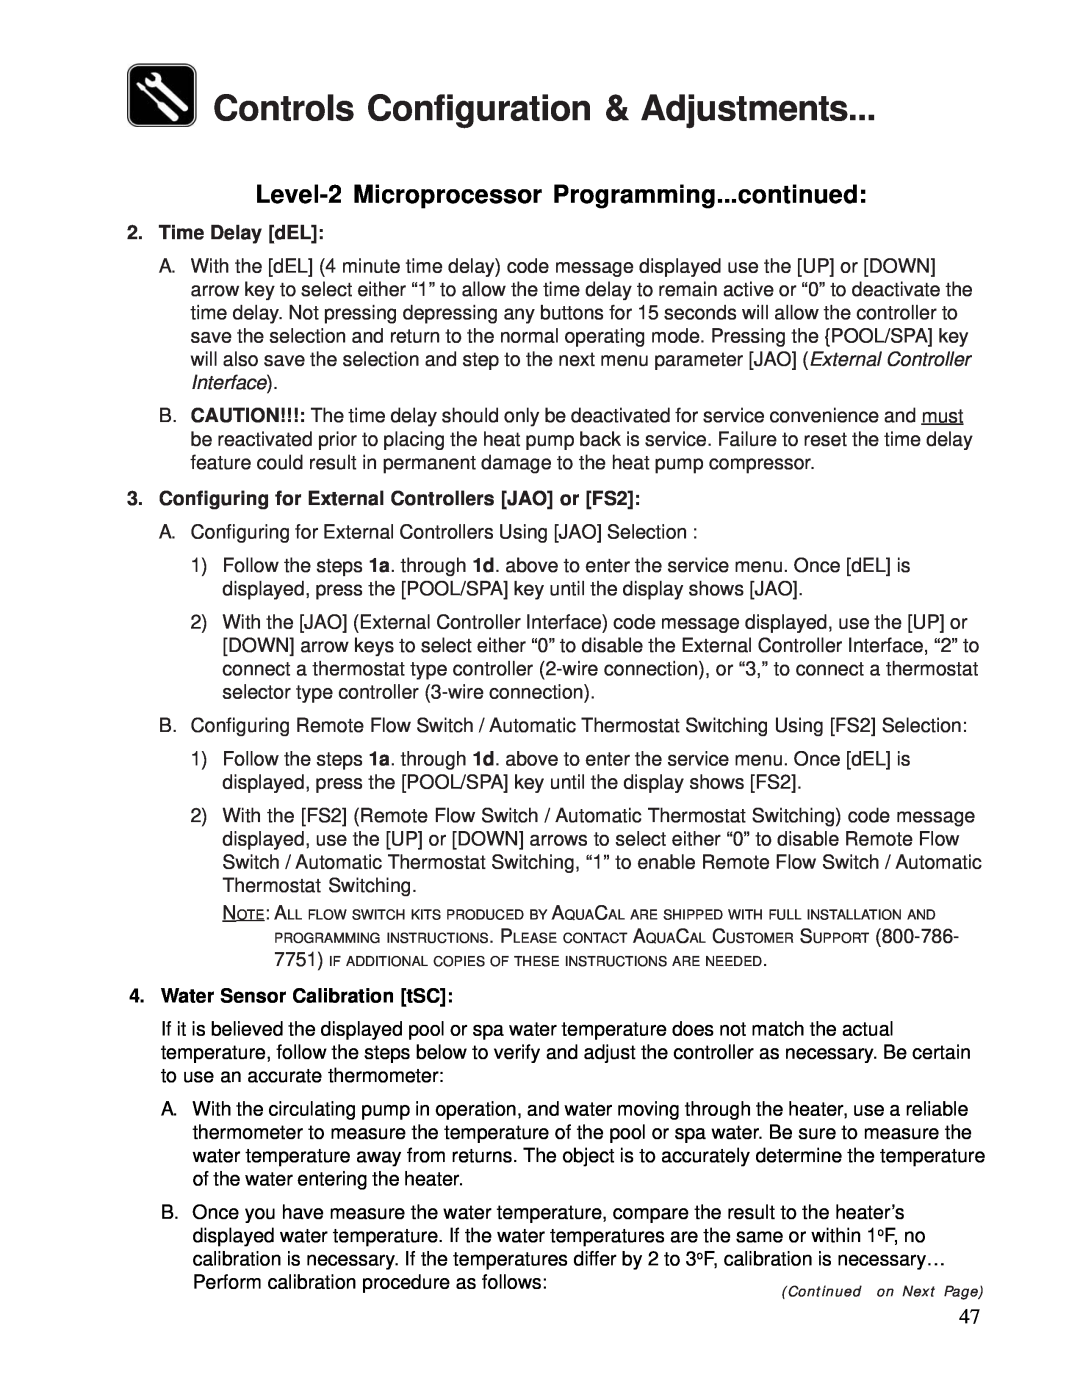 Aquacal 100 Controls Configuration & Adjustments, Level-2Microprocessor Programming...continued, Time Delay dEL 